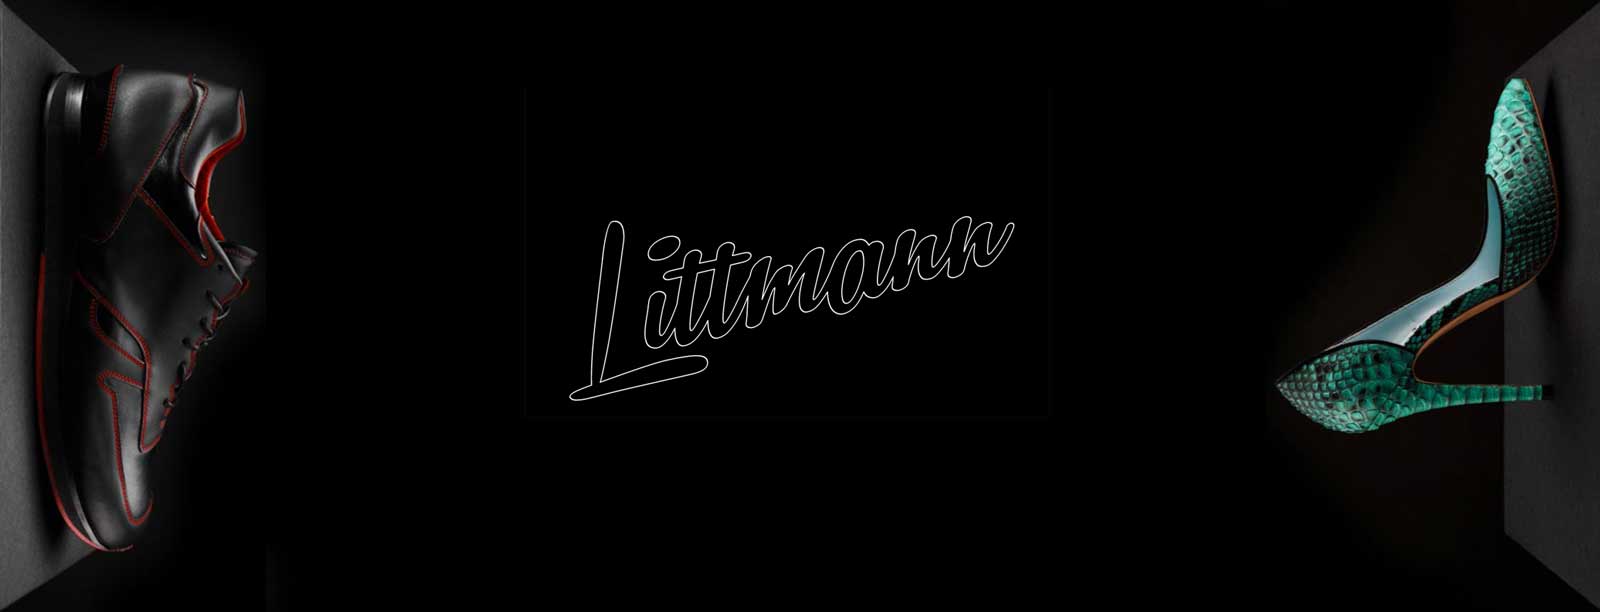 Promo website for Littmann shoes